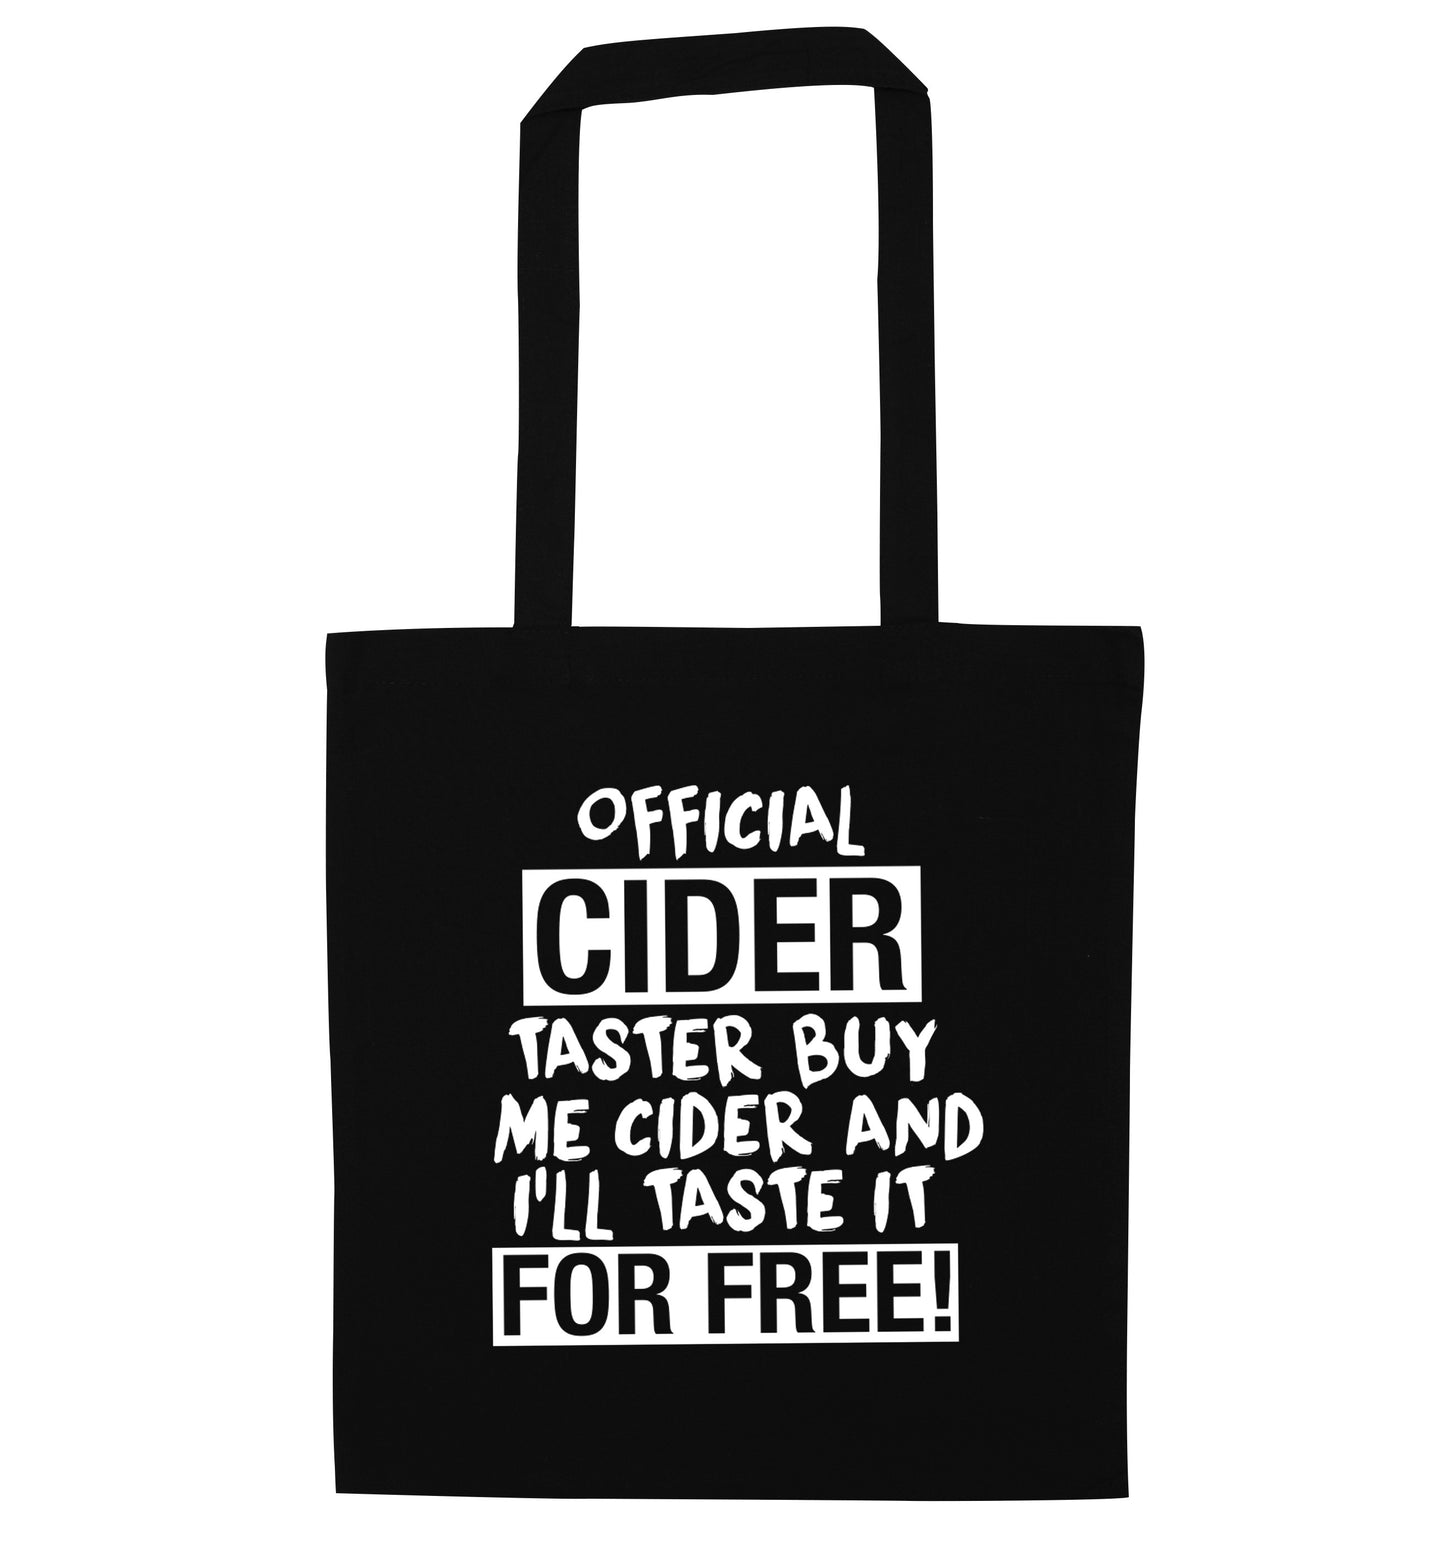 Official cider taster buy me cider and I'll taste it for free! black tote bag